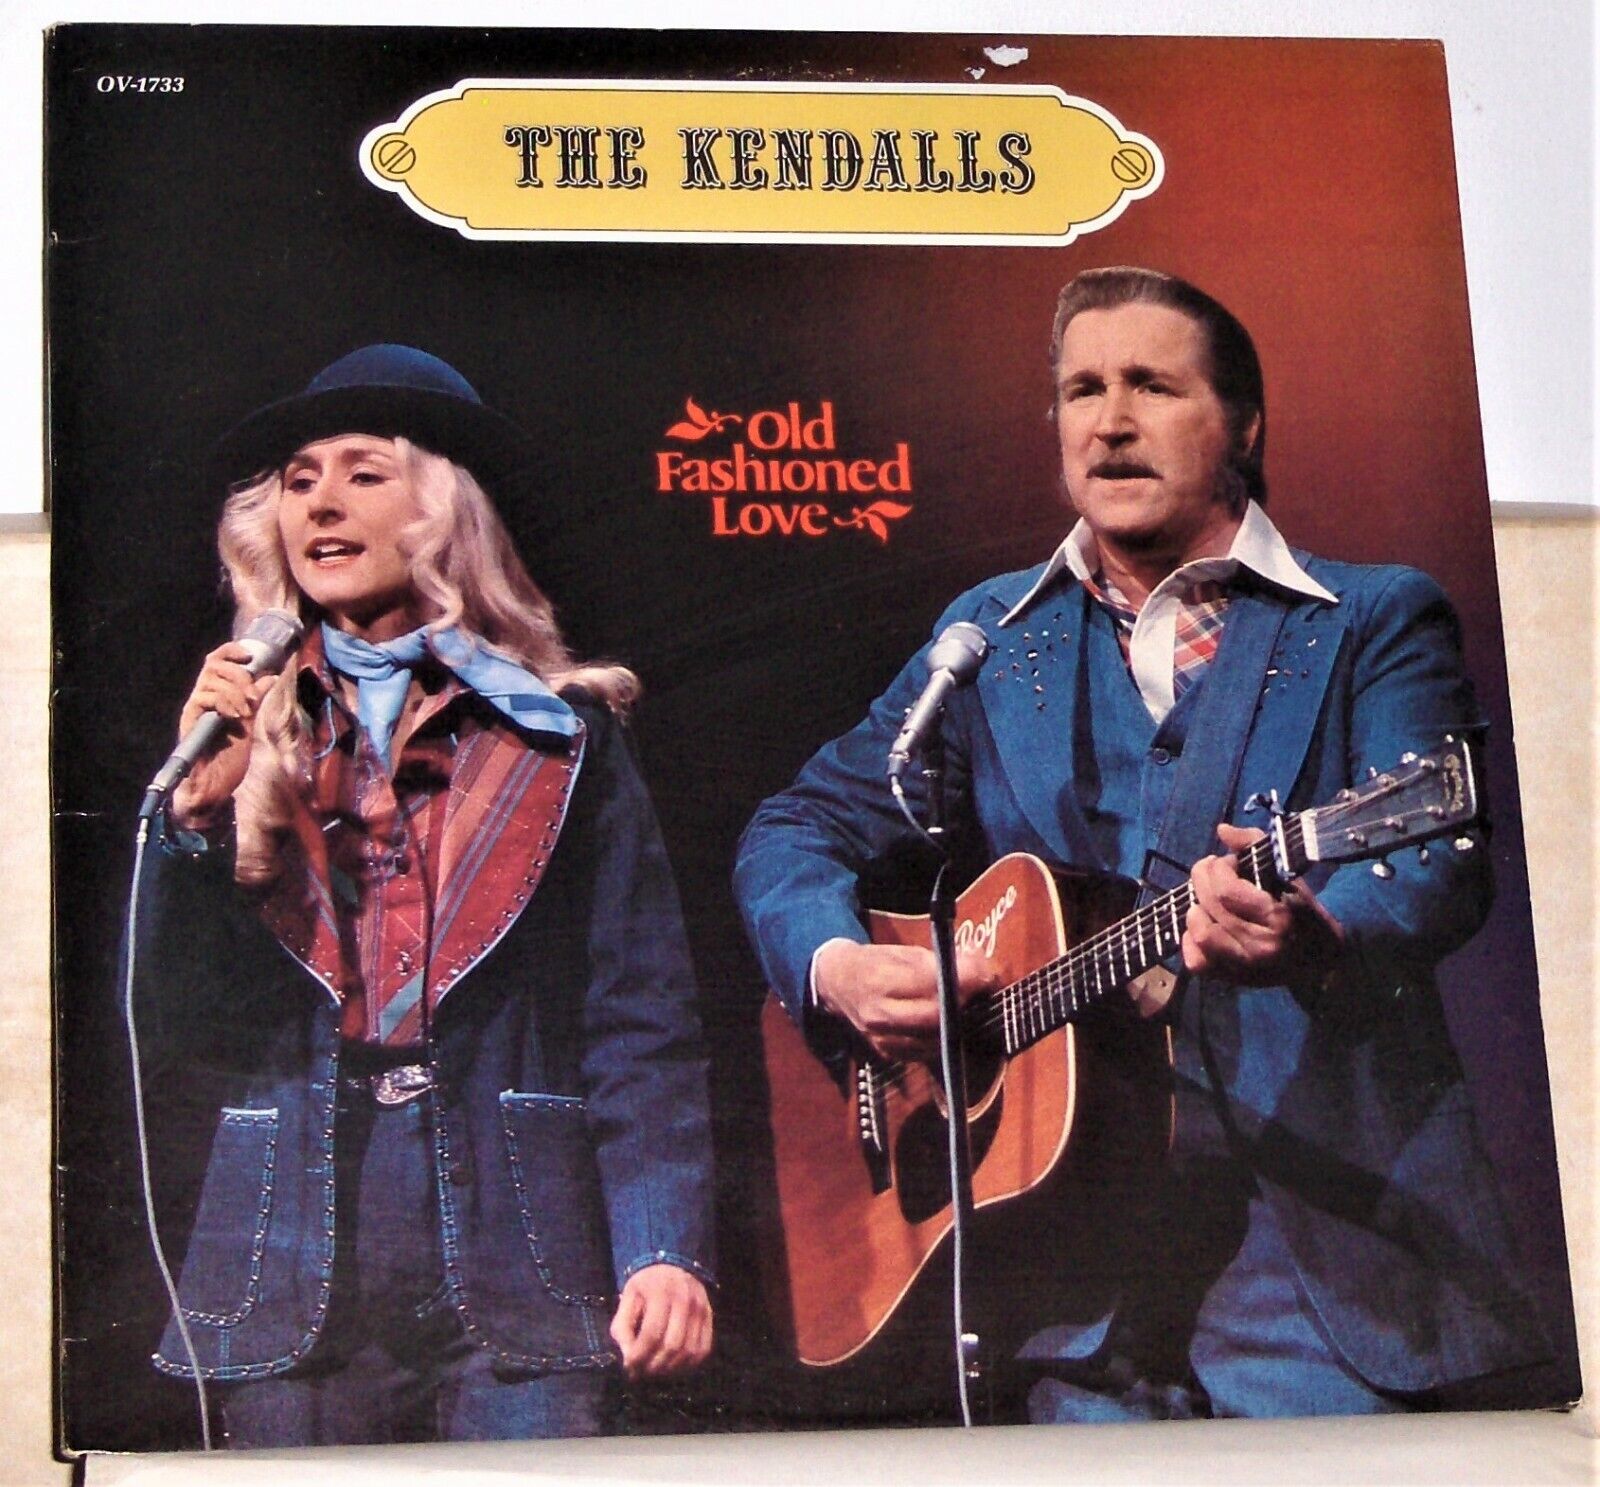 The Kendalls - Old Fashioned Love - Original 1978 Vinyl LP Record Album